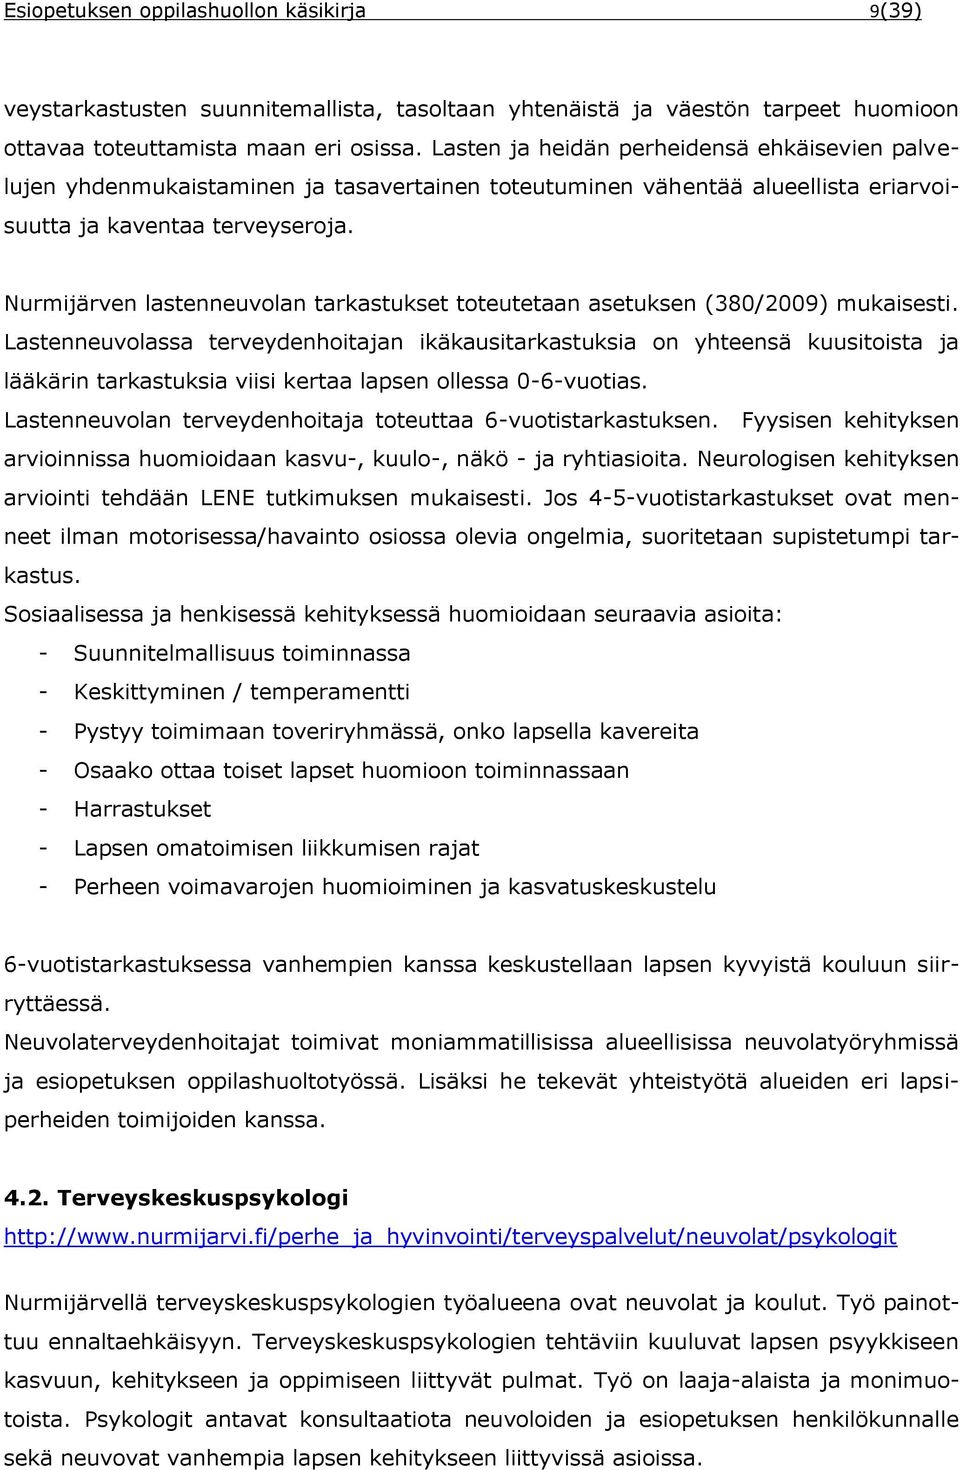 Nurmijärven lastenneuvolan tarkastukset toteutetaan asetuksen (380/2009) mukaisesti.